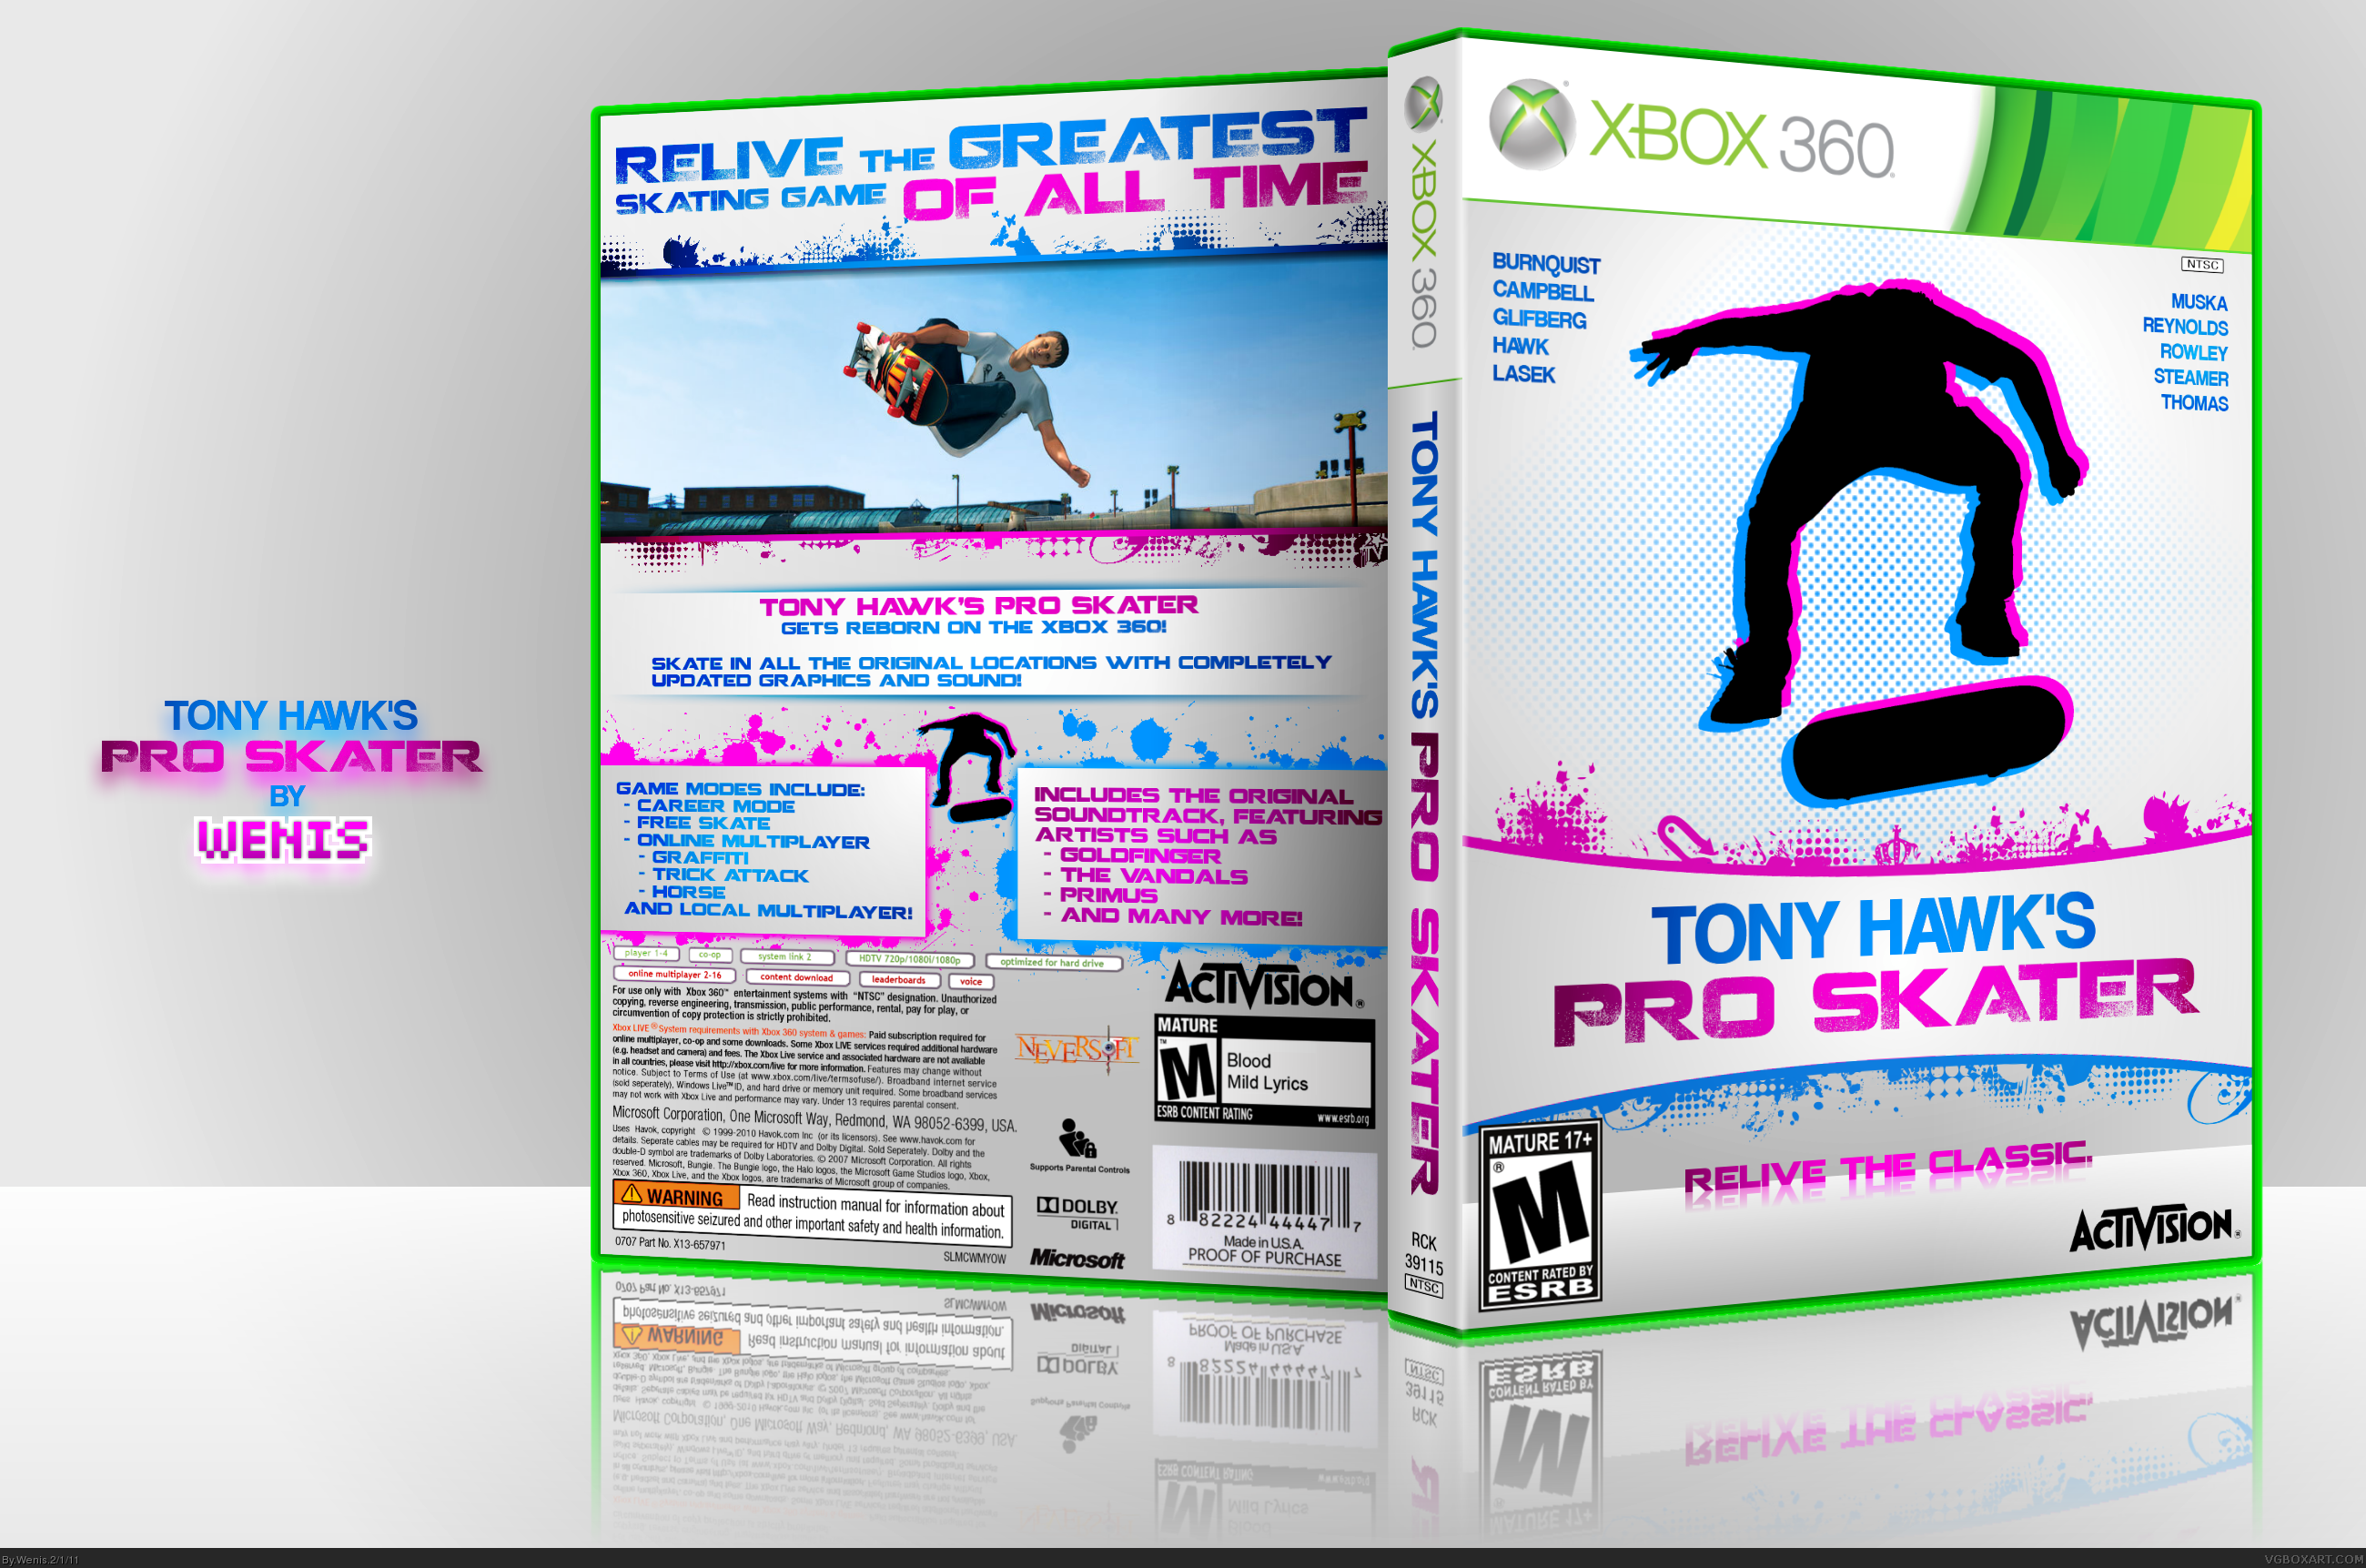 Tony Hawk's Pro Skater box cover